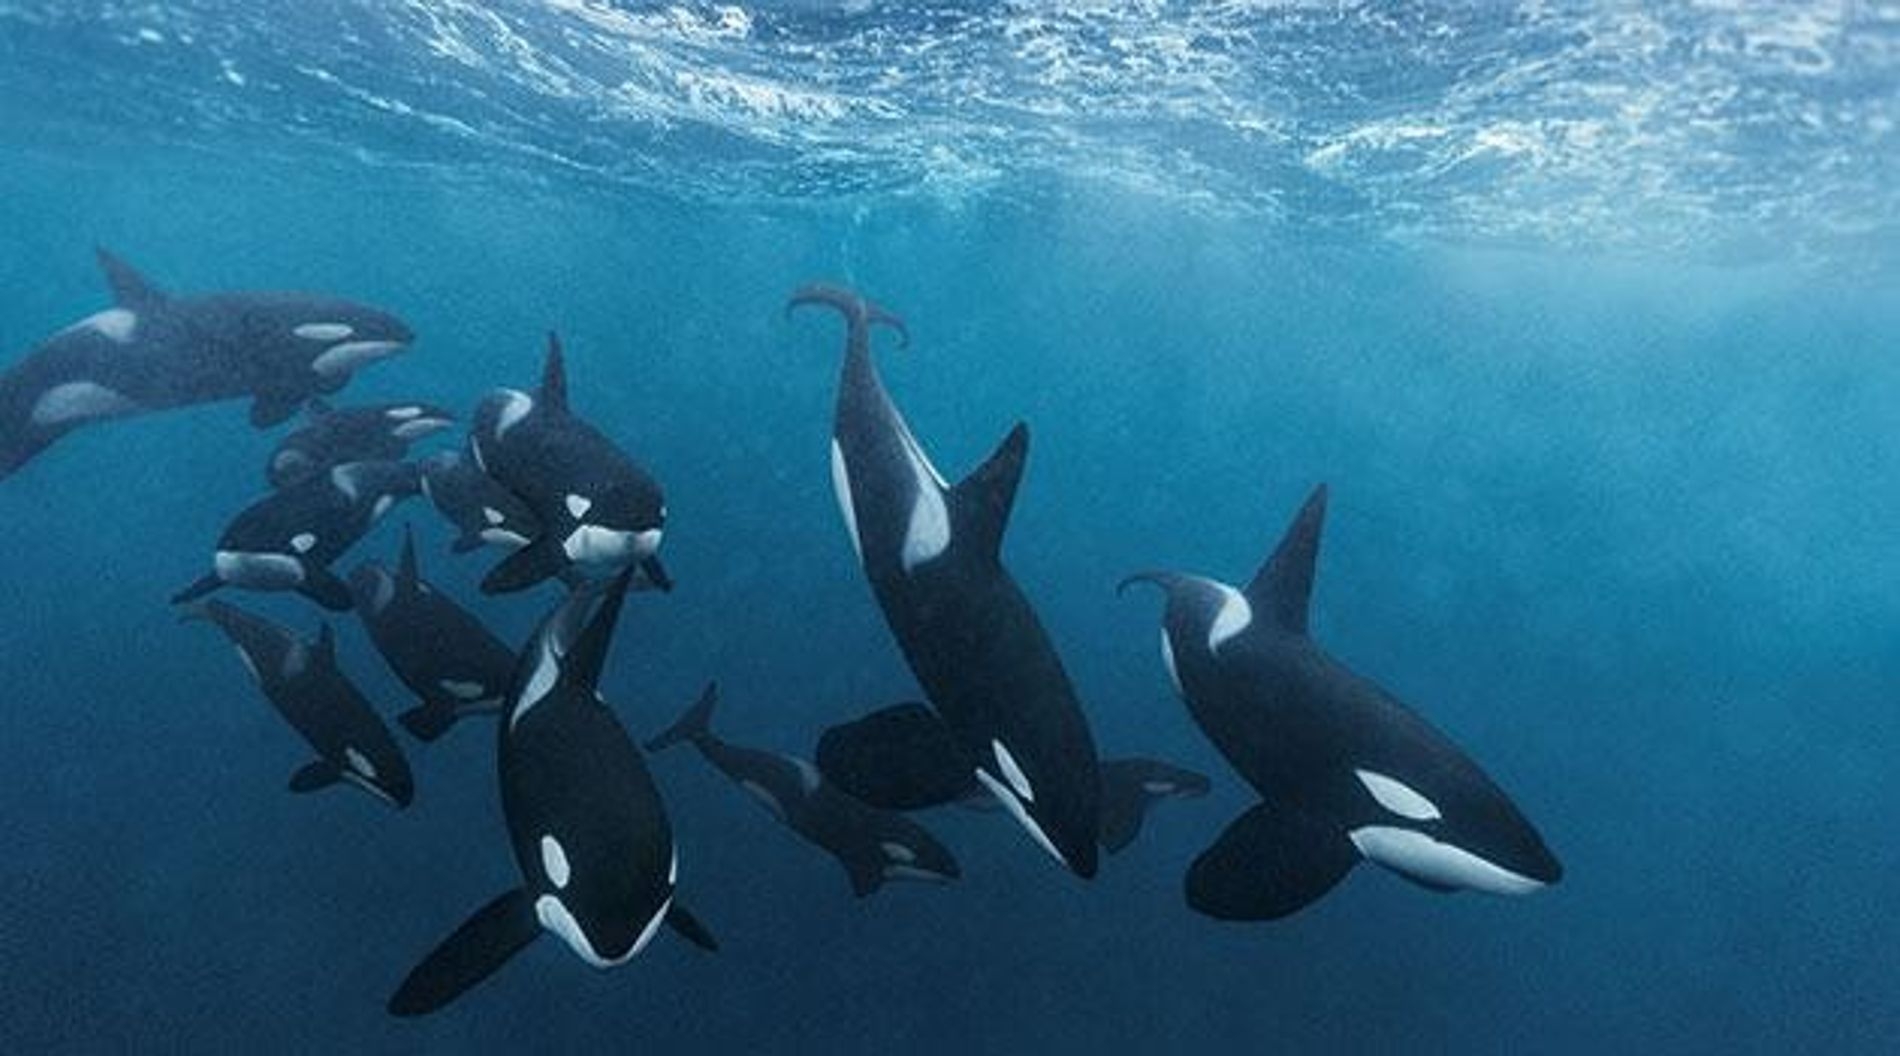  Des orques attaquent des voiliers  zone interdite dans le nord de l'Espagne !